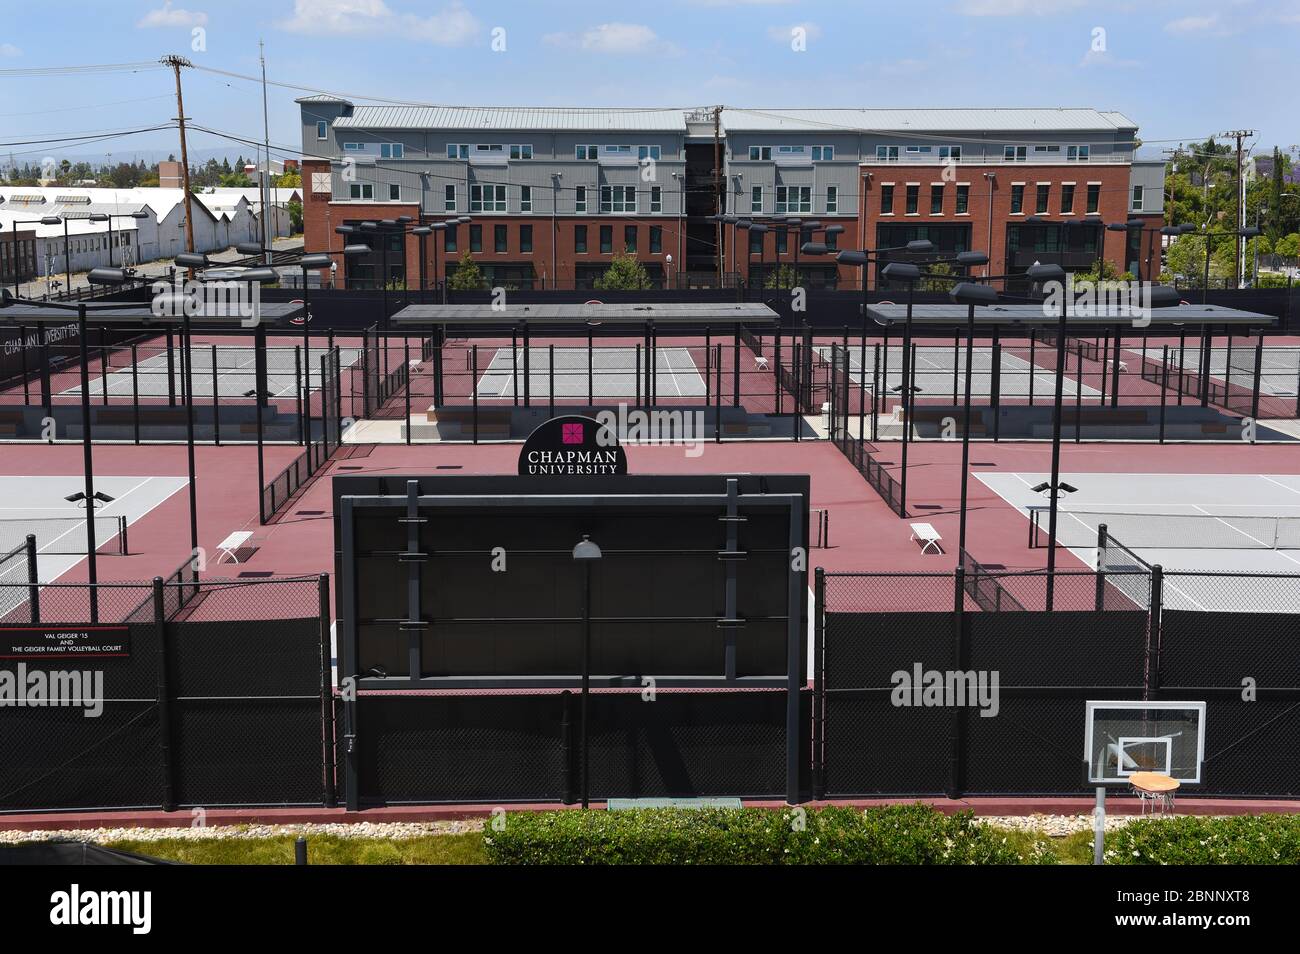 ORANGE, CALIFORNIE - 14 MAI 2020 : courts au Lastinger tennis Centre vus depuis le parking sur le campus de l'université Chapman. La résolution K Banque D'Images